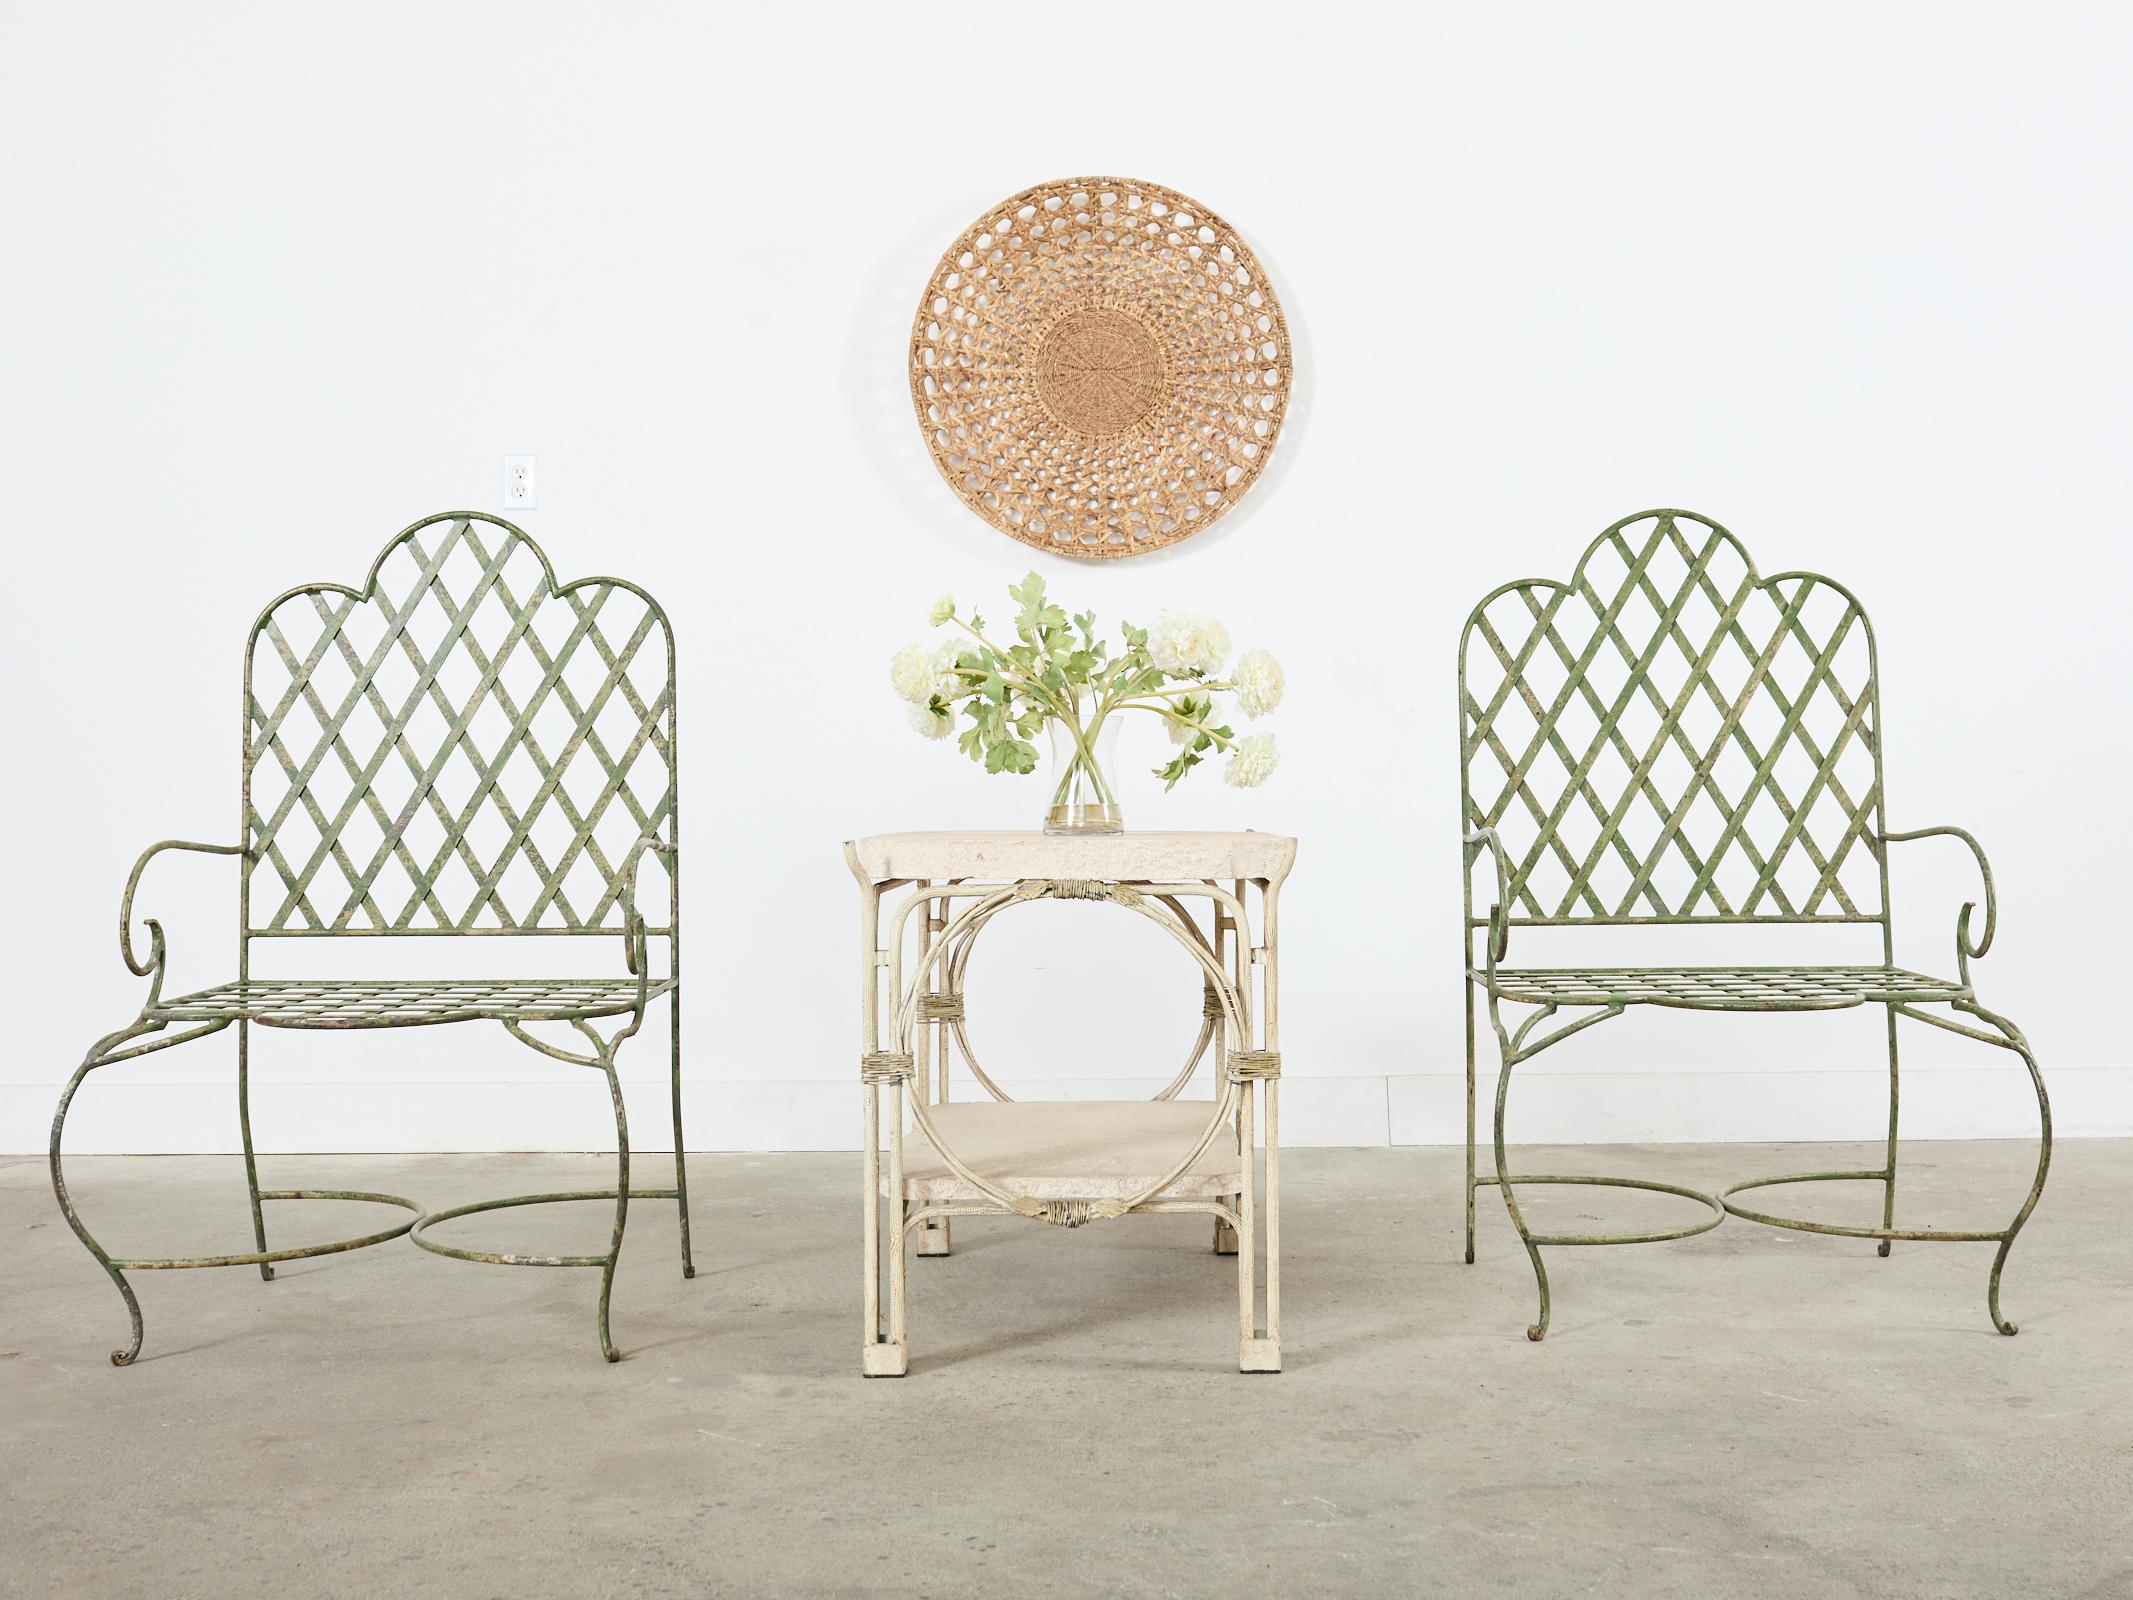 Ensemble fantaisiste de cinq fauteuils de patio et de jardin en fer, fabriqués dans le style et à la manière de Rose Tarlow. Les chaises sont dotées d'un grand cadre en fer fabriqué à la main et d'un treillis de style néoclassique sur l'assise et le